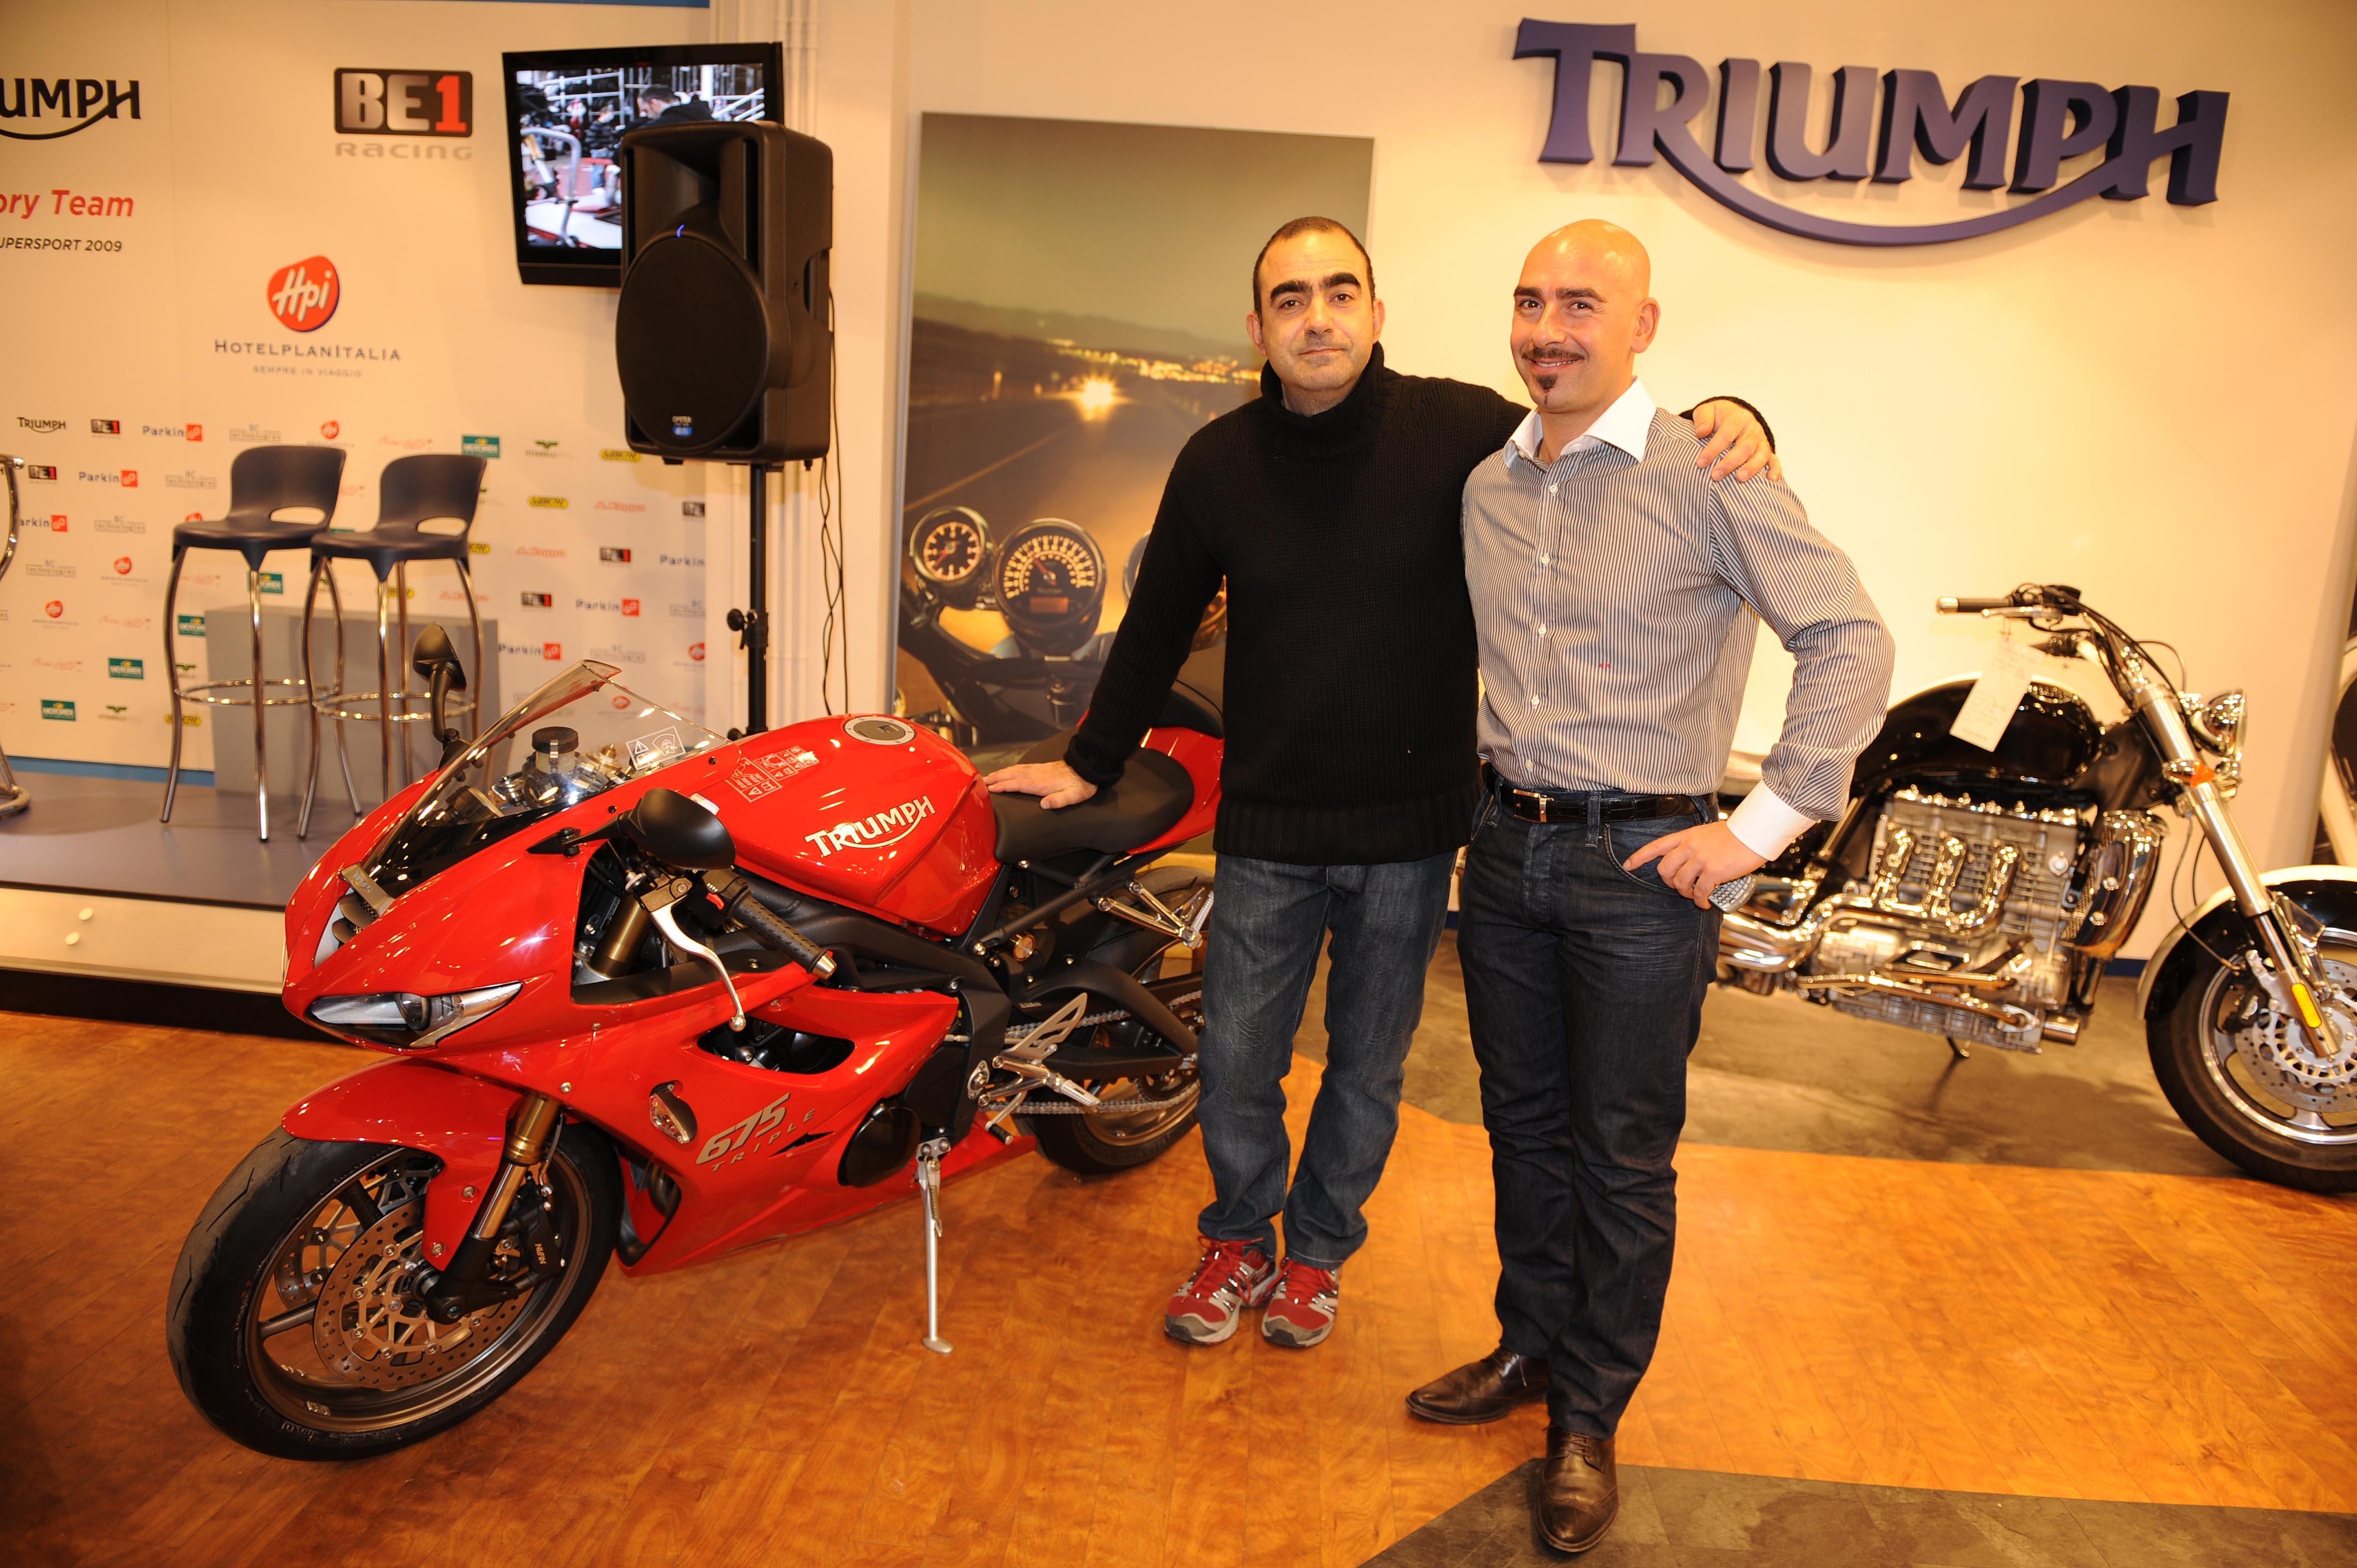 Presentato a Milano il ParkinGO Triumph BE 1 Racing Team con Elio e le Storie Tese